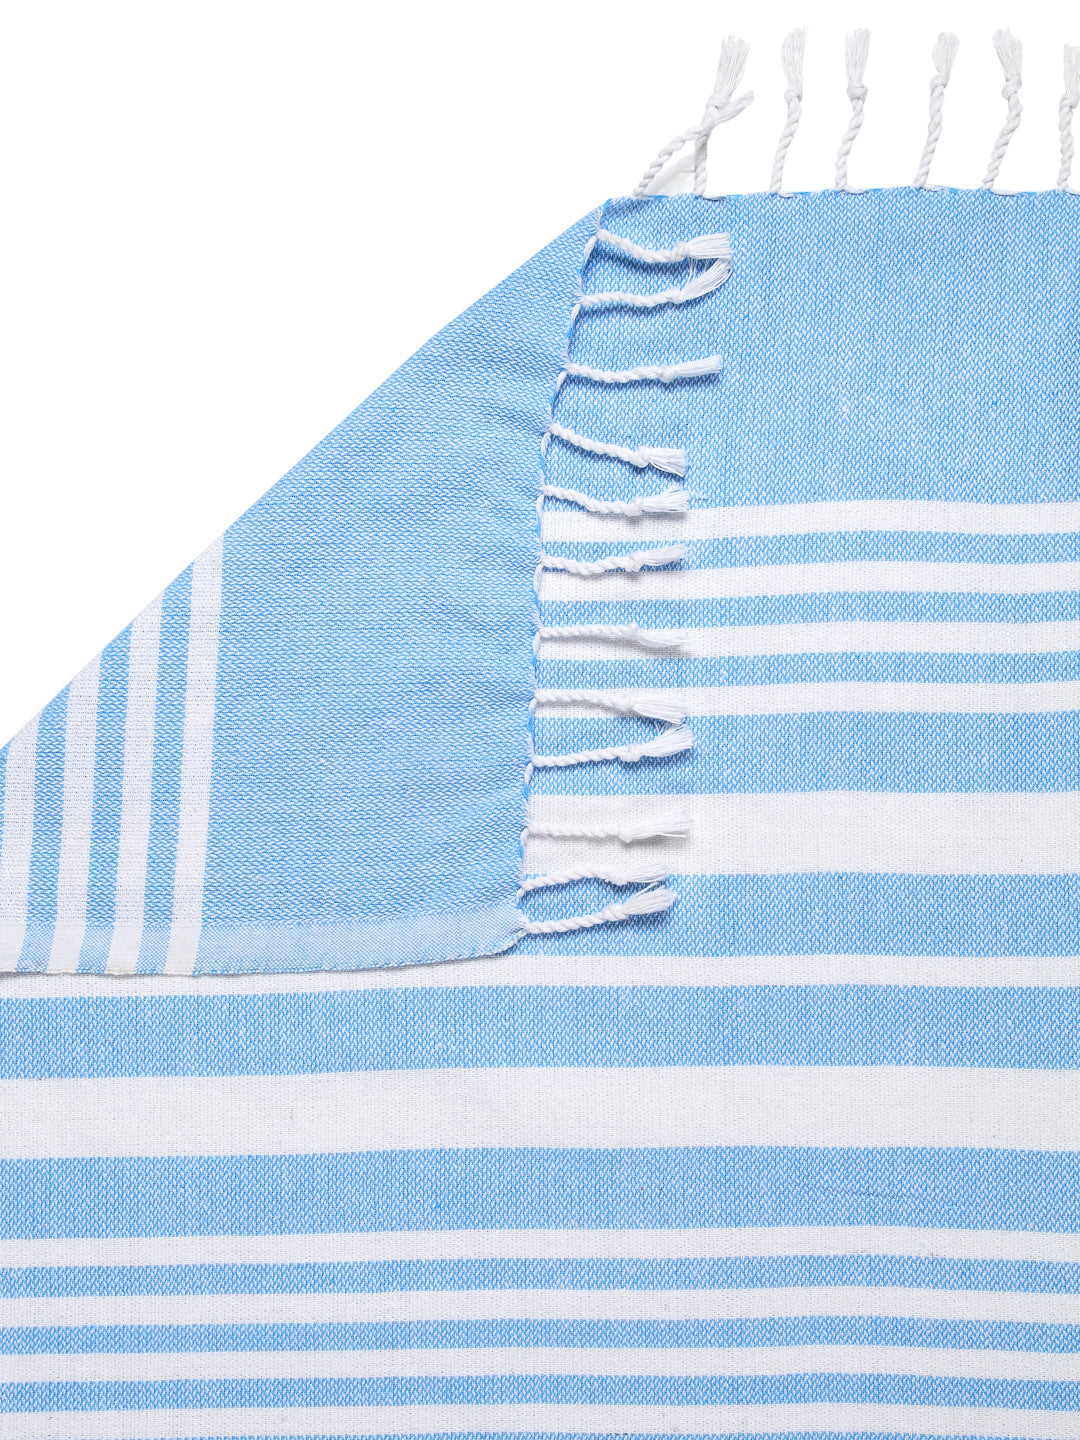 KLOTTHE Set of 3 Blue Cotton Striped Bath Towels (150X75 cm)